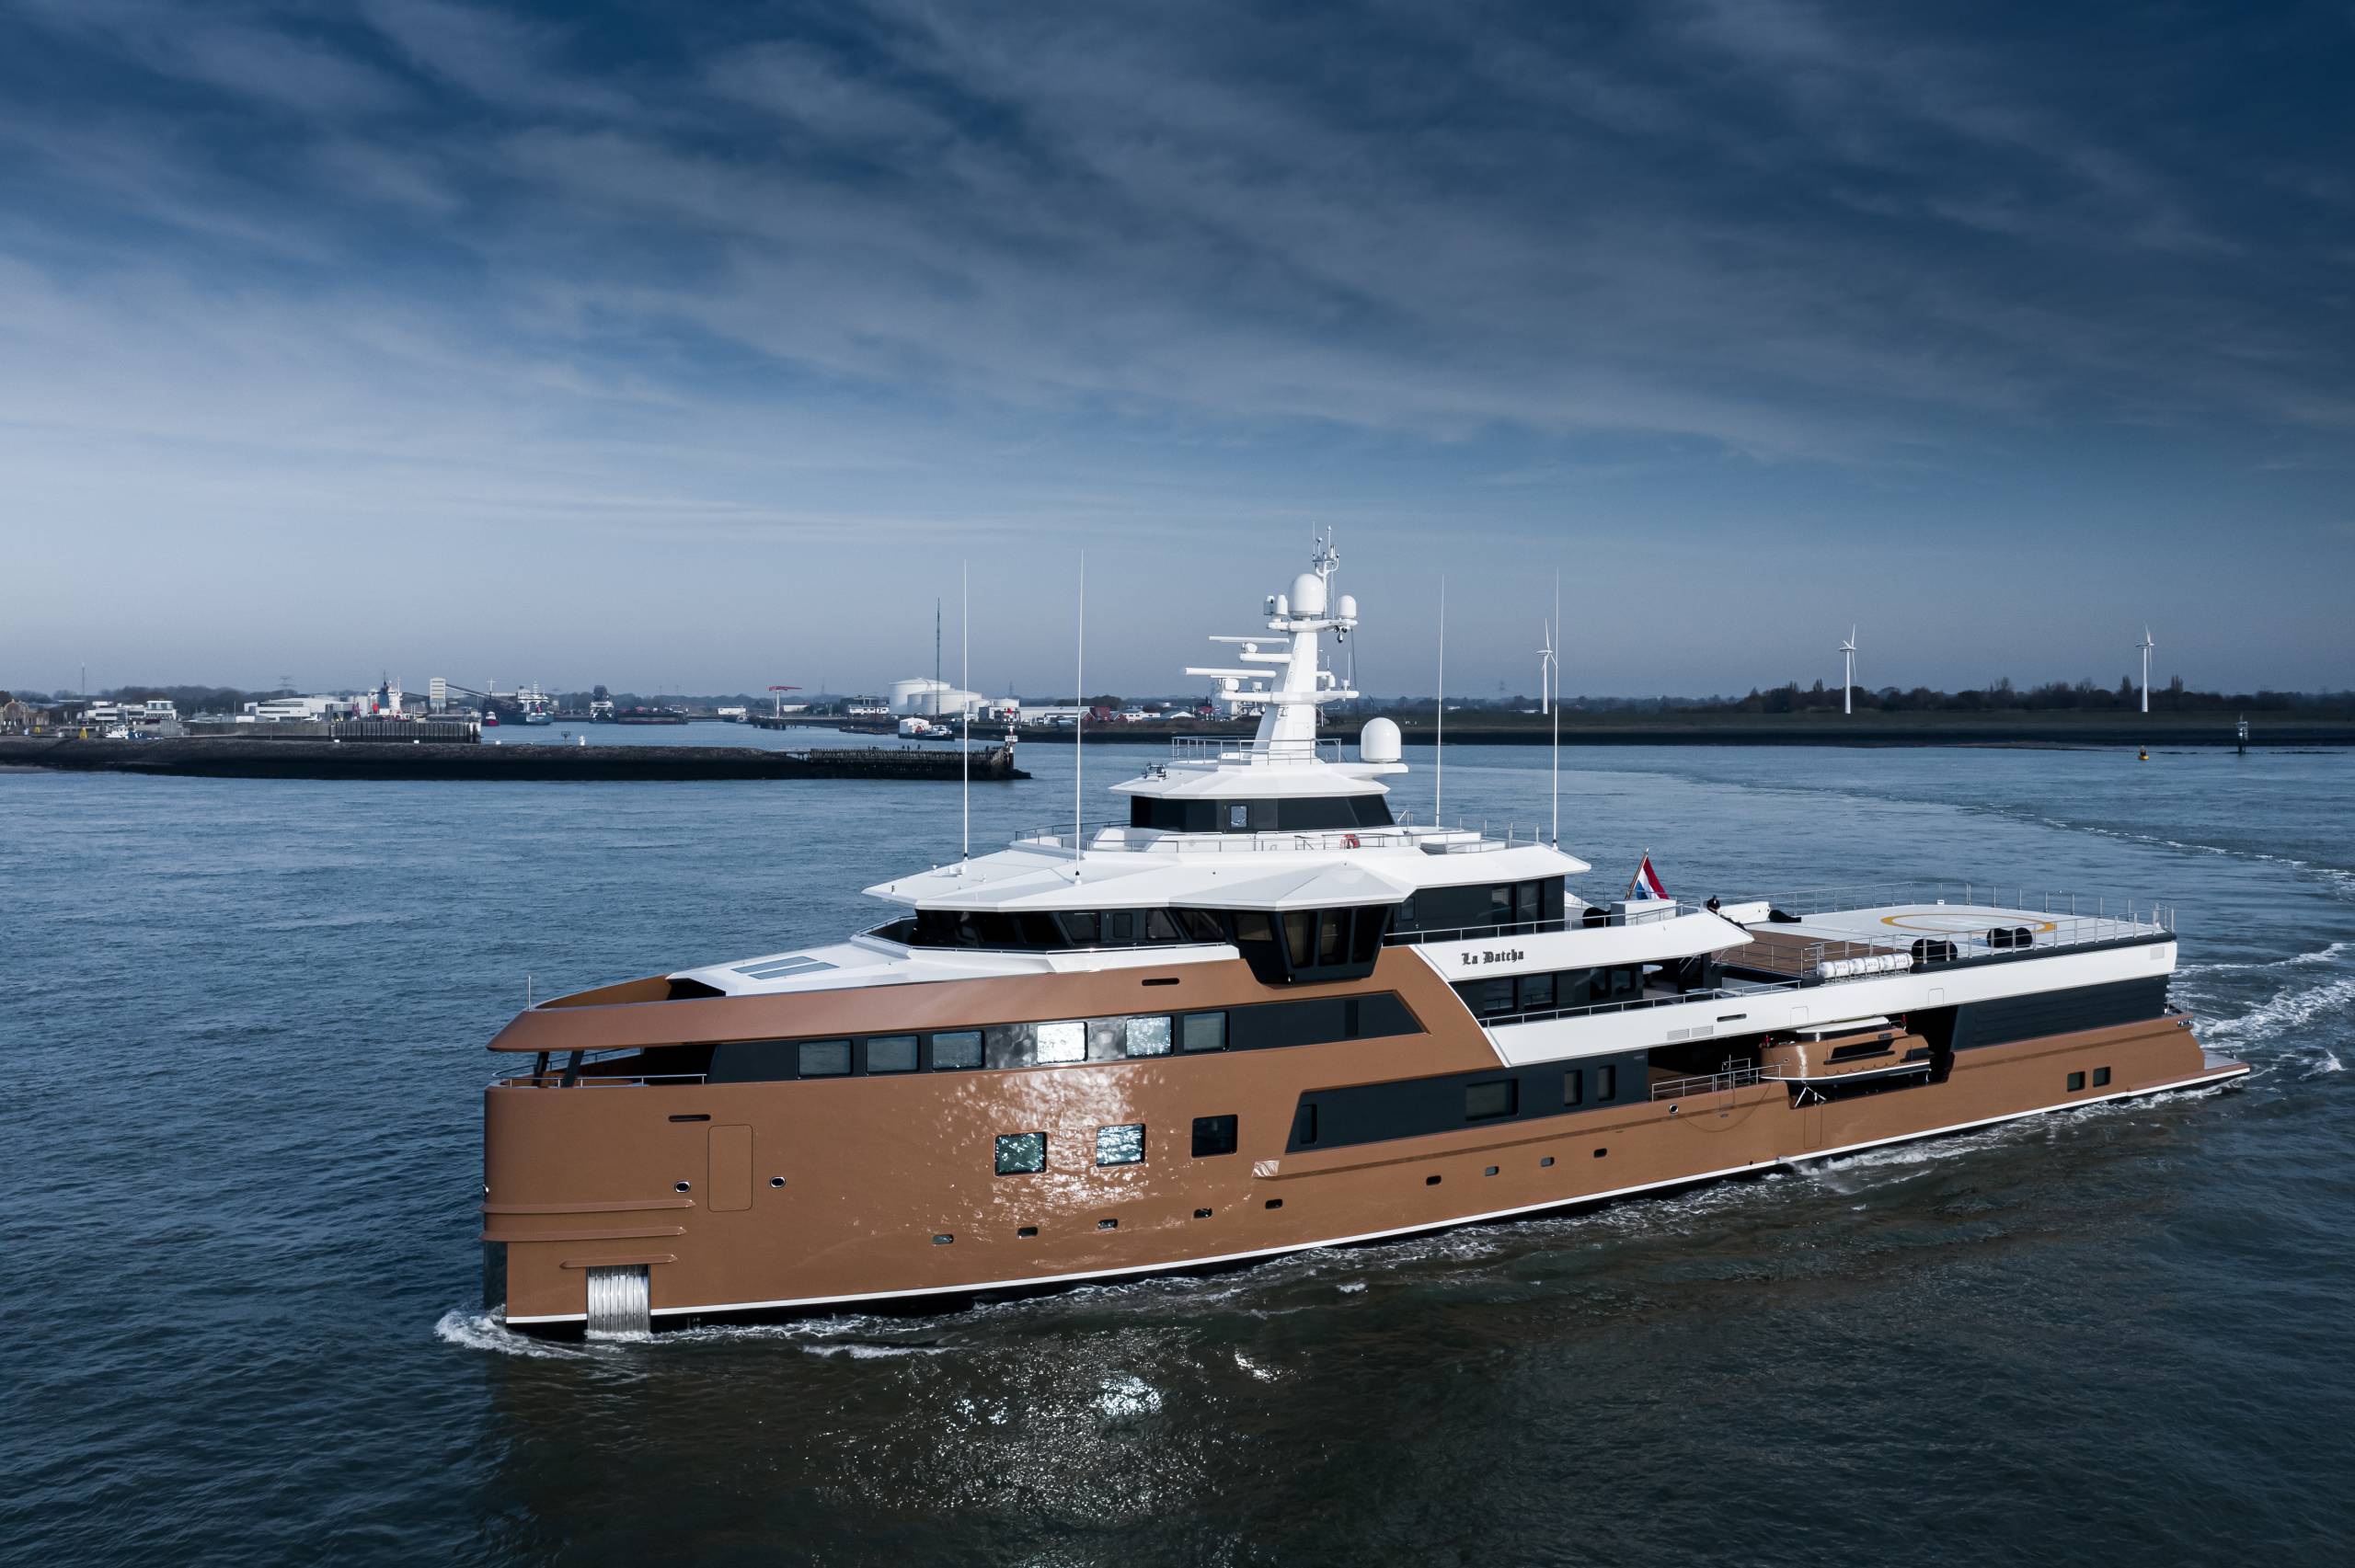 LA DATCHA Yacht • Oleg Tinkov $110M Superyacht • Damen Sea Explorer • 2019